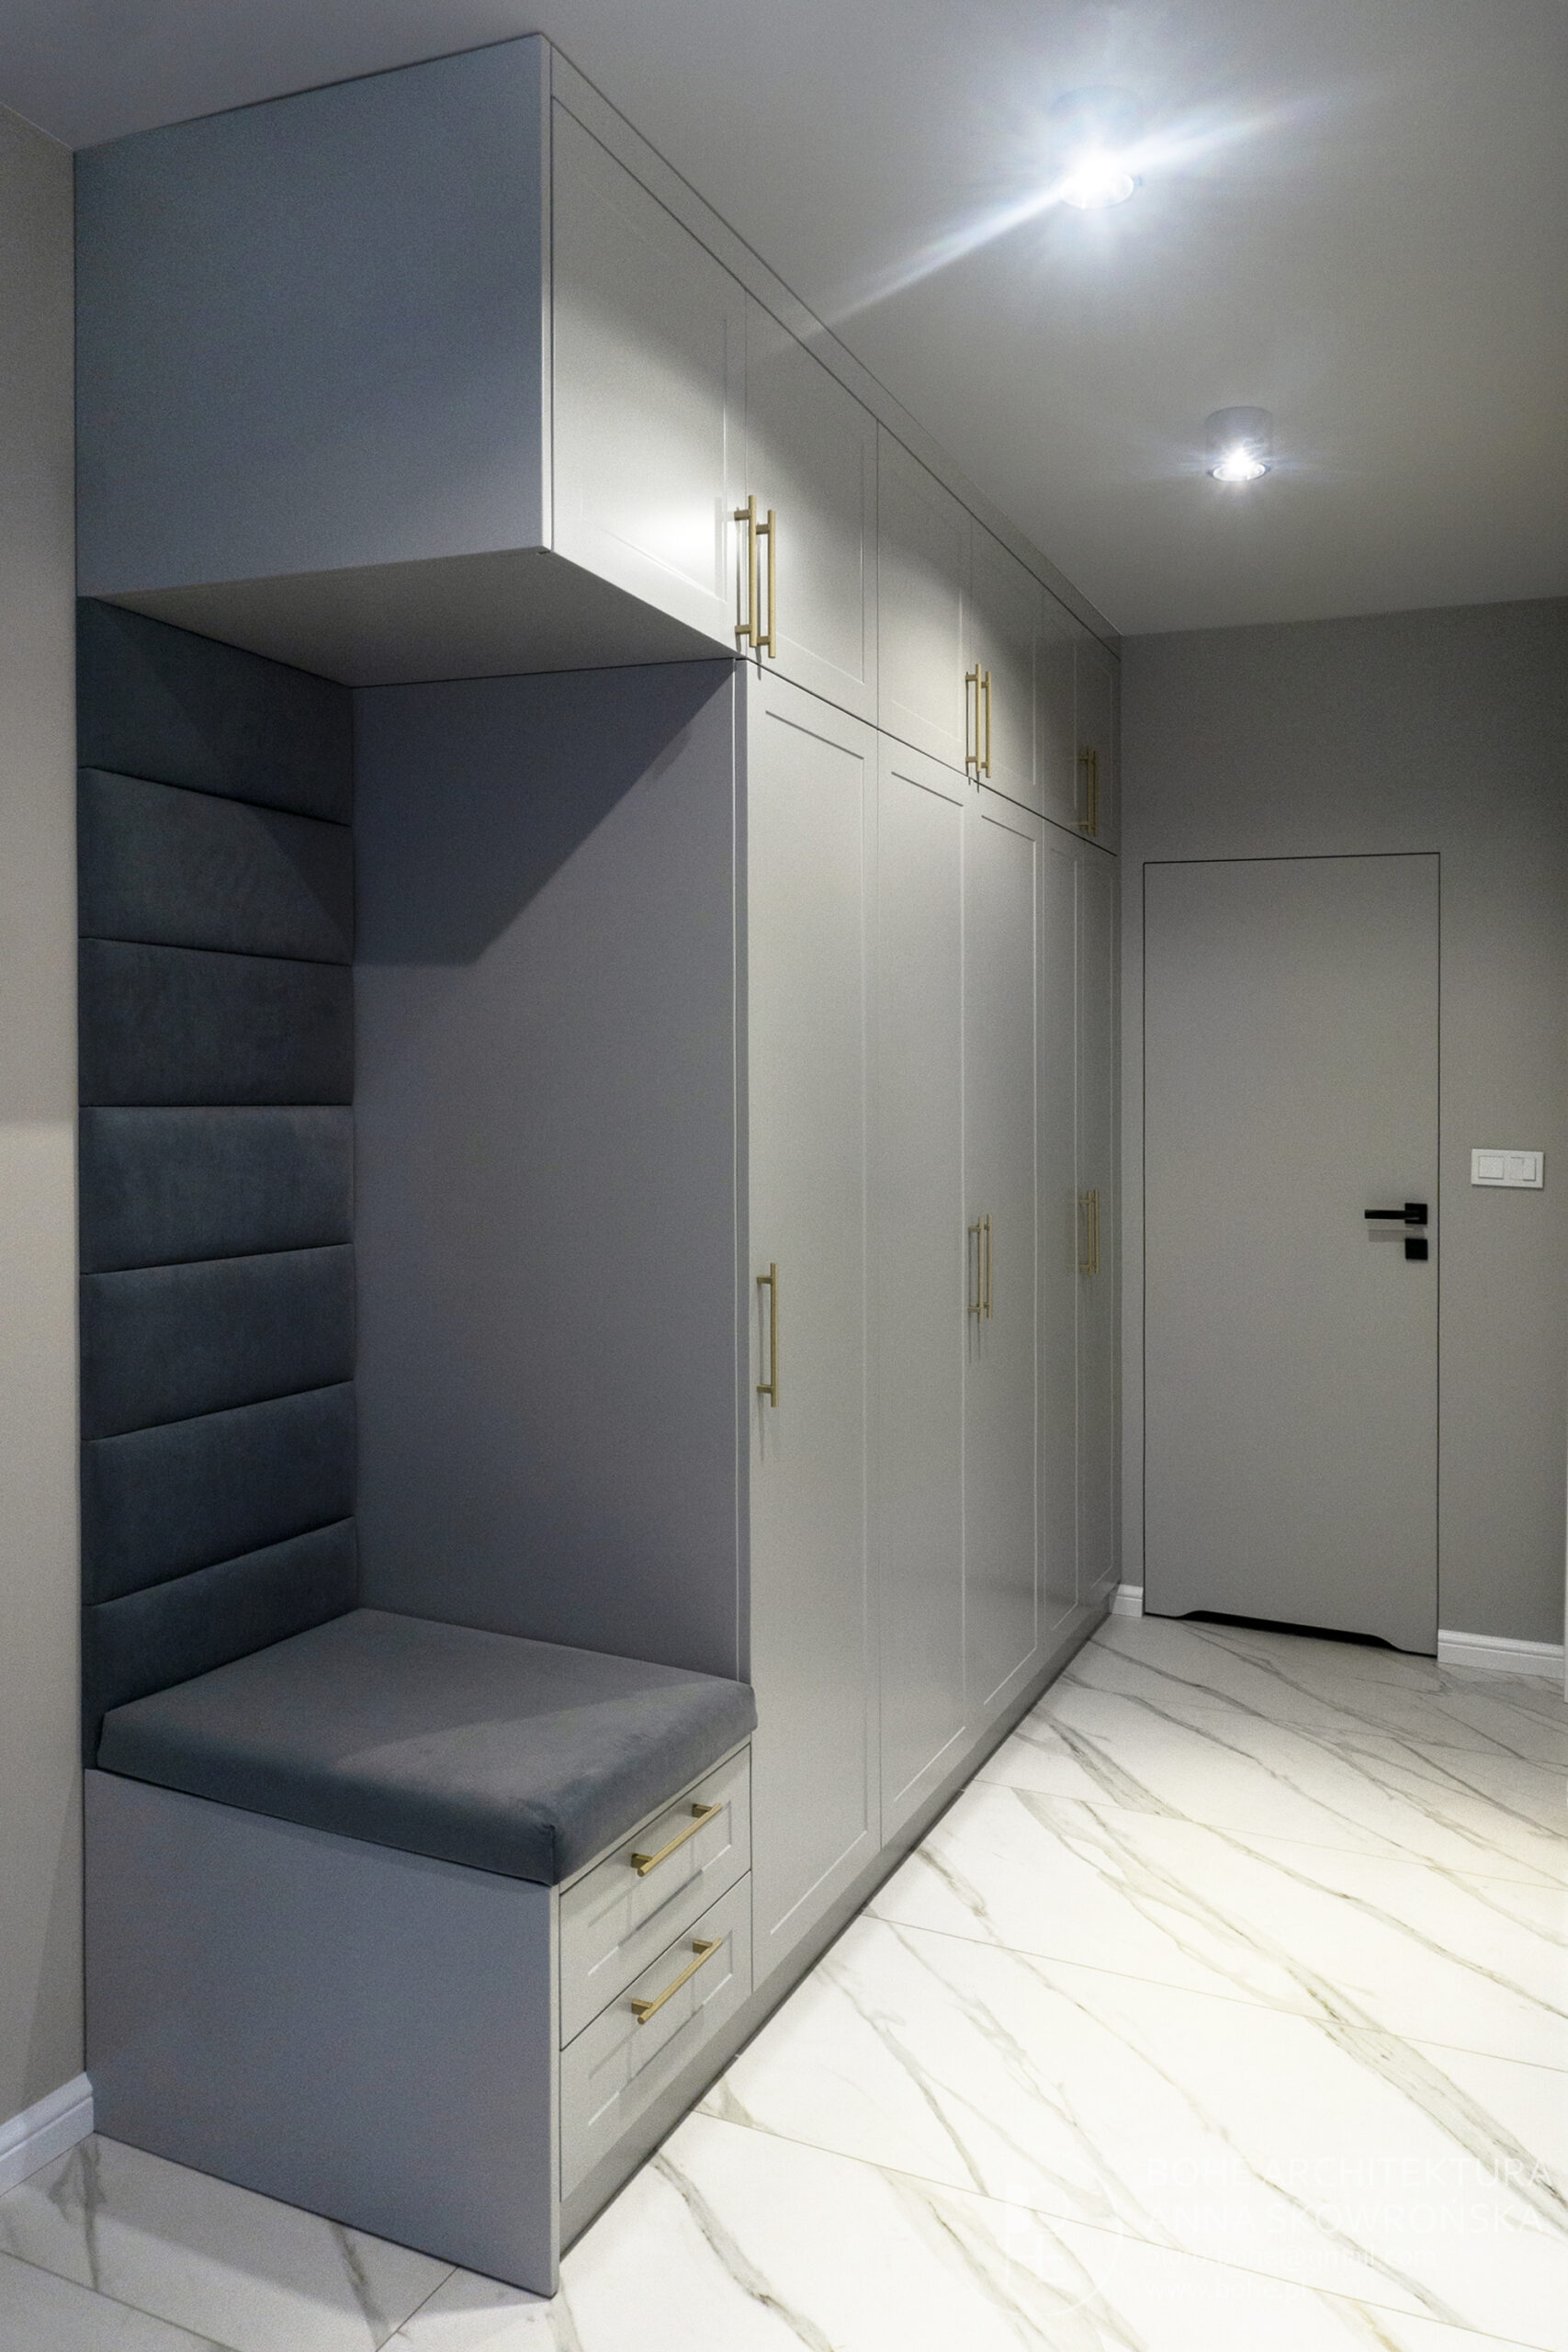 projekt korytarza w jasnych barwach mieszkanie architekt białystok